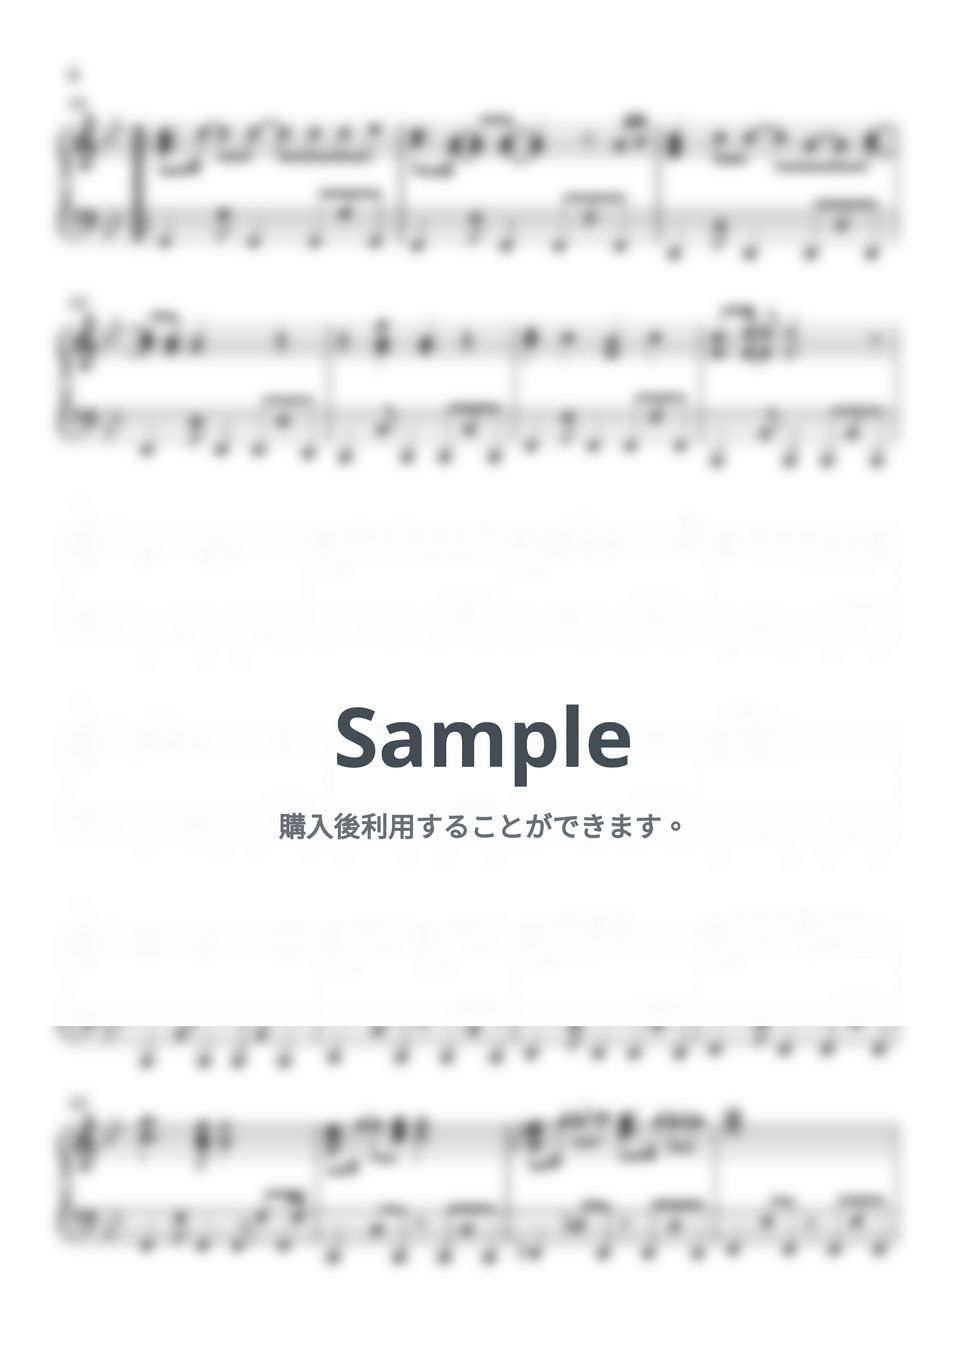 玉置成実 - Reason (機動戦士ガンダムSEED) by Piano Lovers. jp